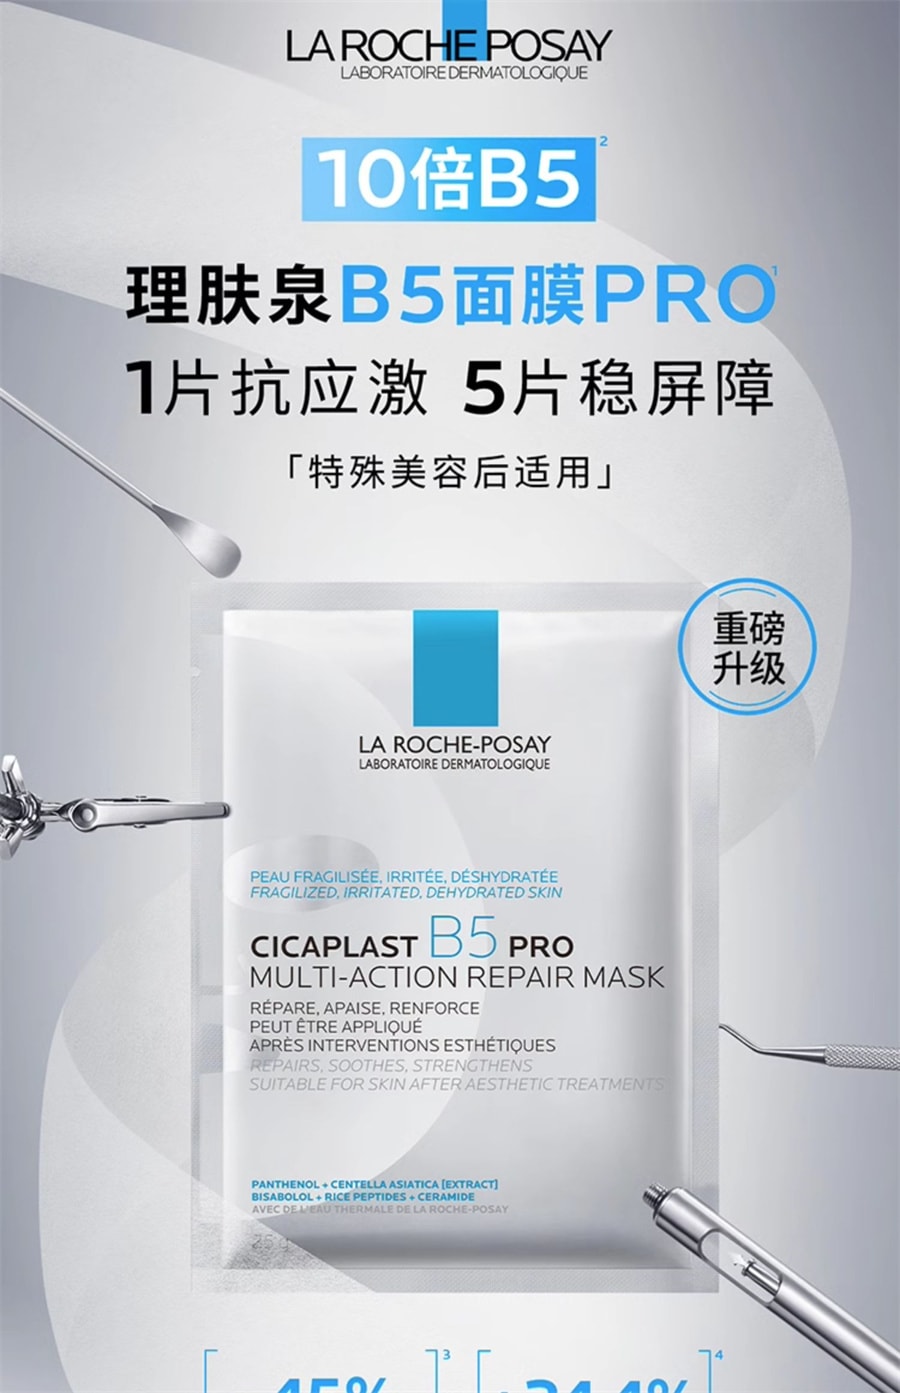 【美國極速出貨】 理膚泉 B5面膜Pro 補水保濕 緊急修護舒緩敏感肌 5片/盒